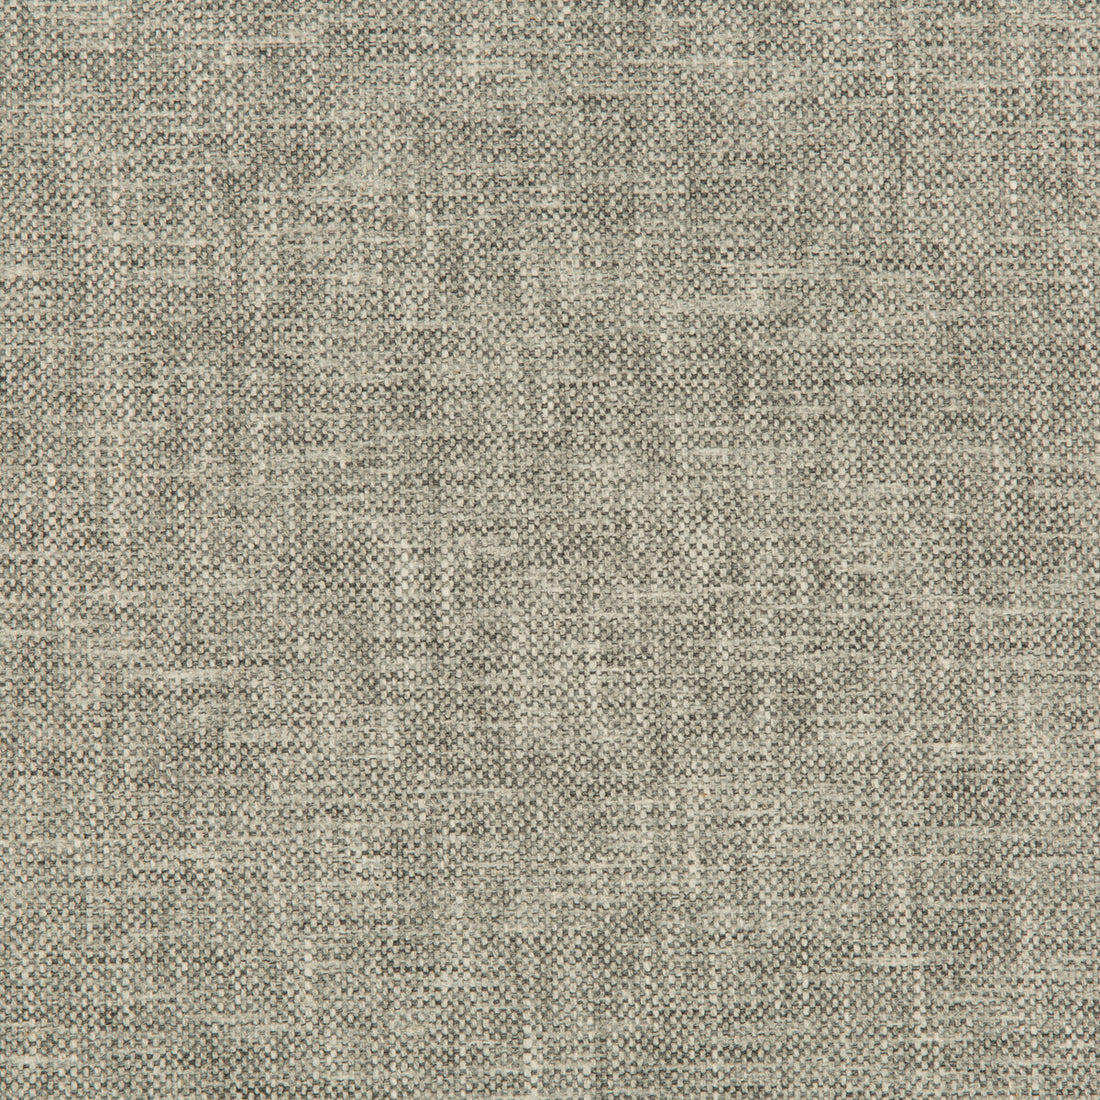 Kravet Basics fabric in 35249-106 color - pattern 35249.106.0 - by Kravet Basics